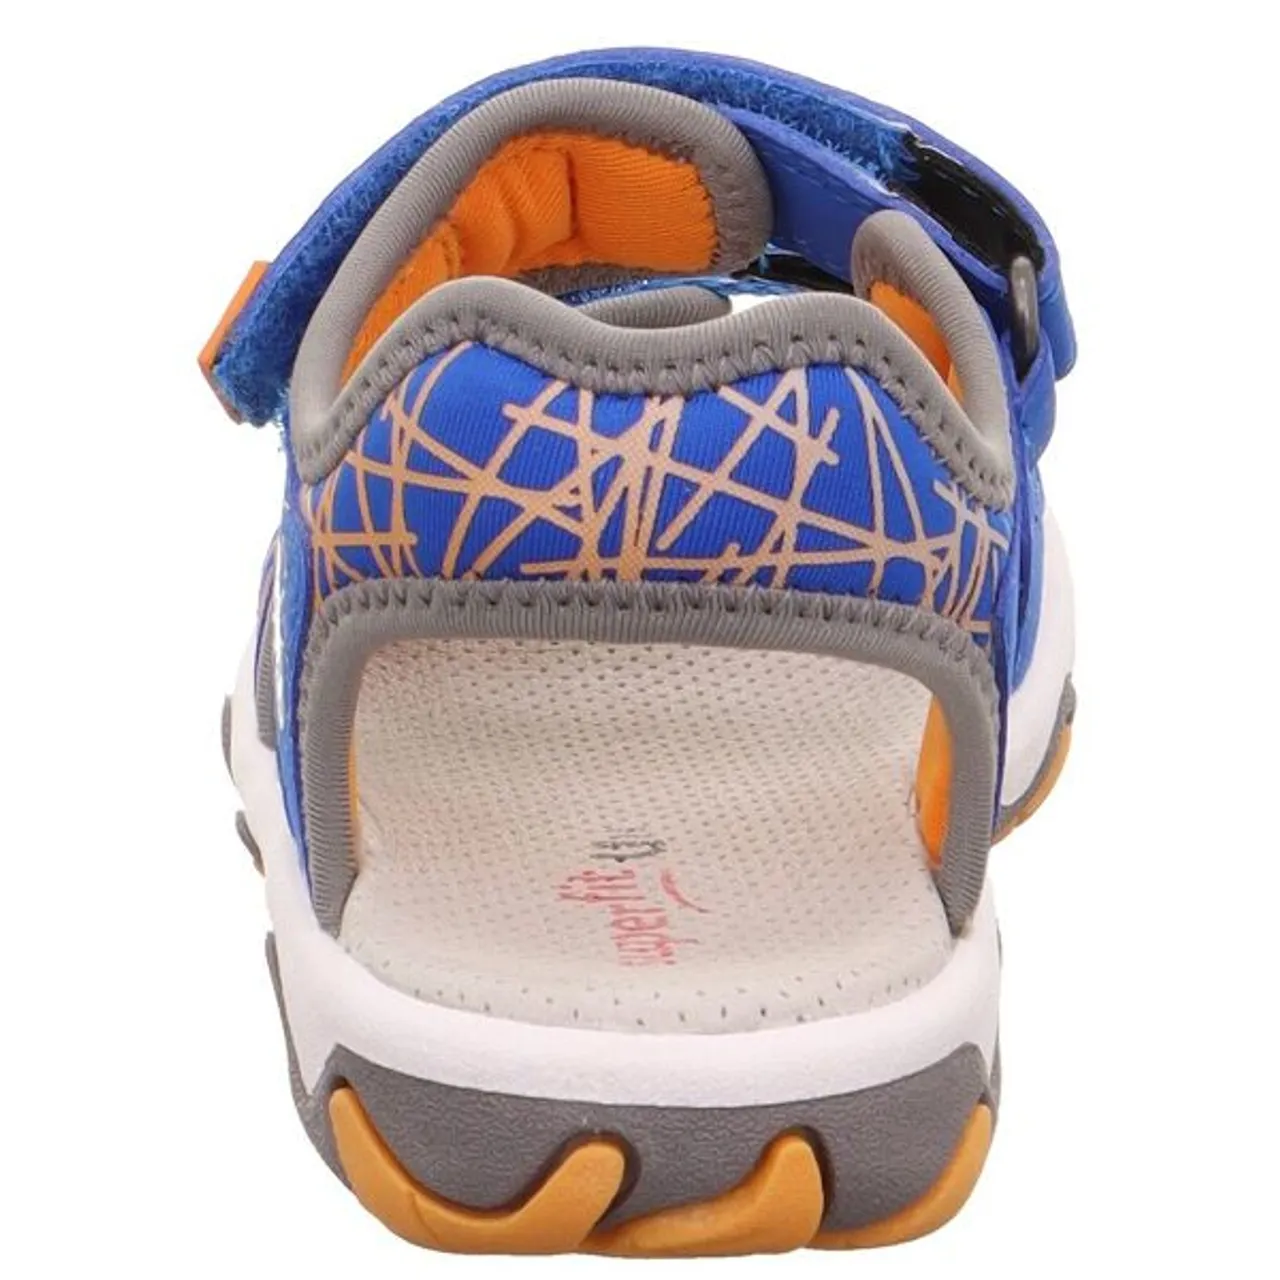 Sandale SUPERFIT "MIKE 3.0 WMS: mittel" Gr. 27, blau (blau, orange) Kinder Schuhe Sommerschuh, Klettschuh, Outdoorschuh, mit Klettverschluss-Riemchen